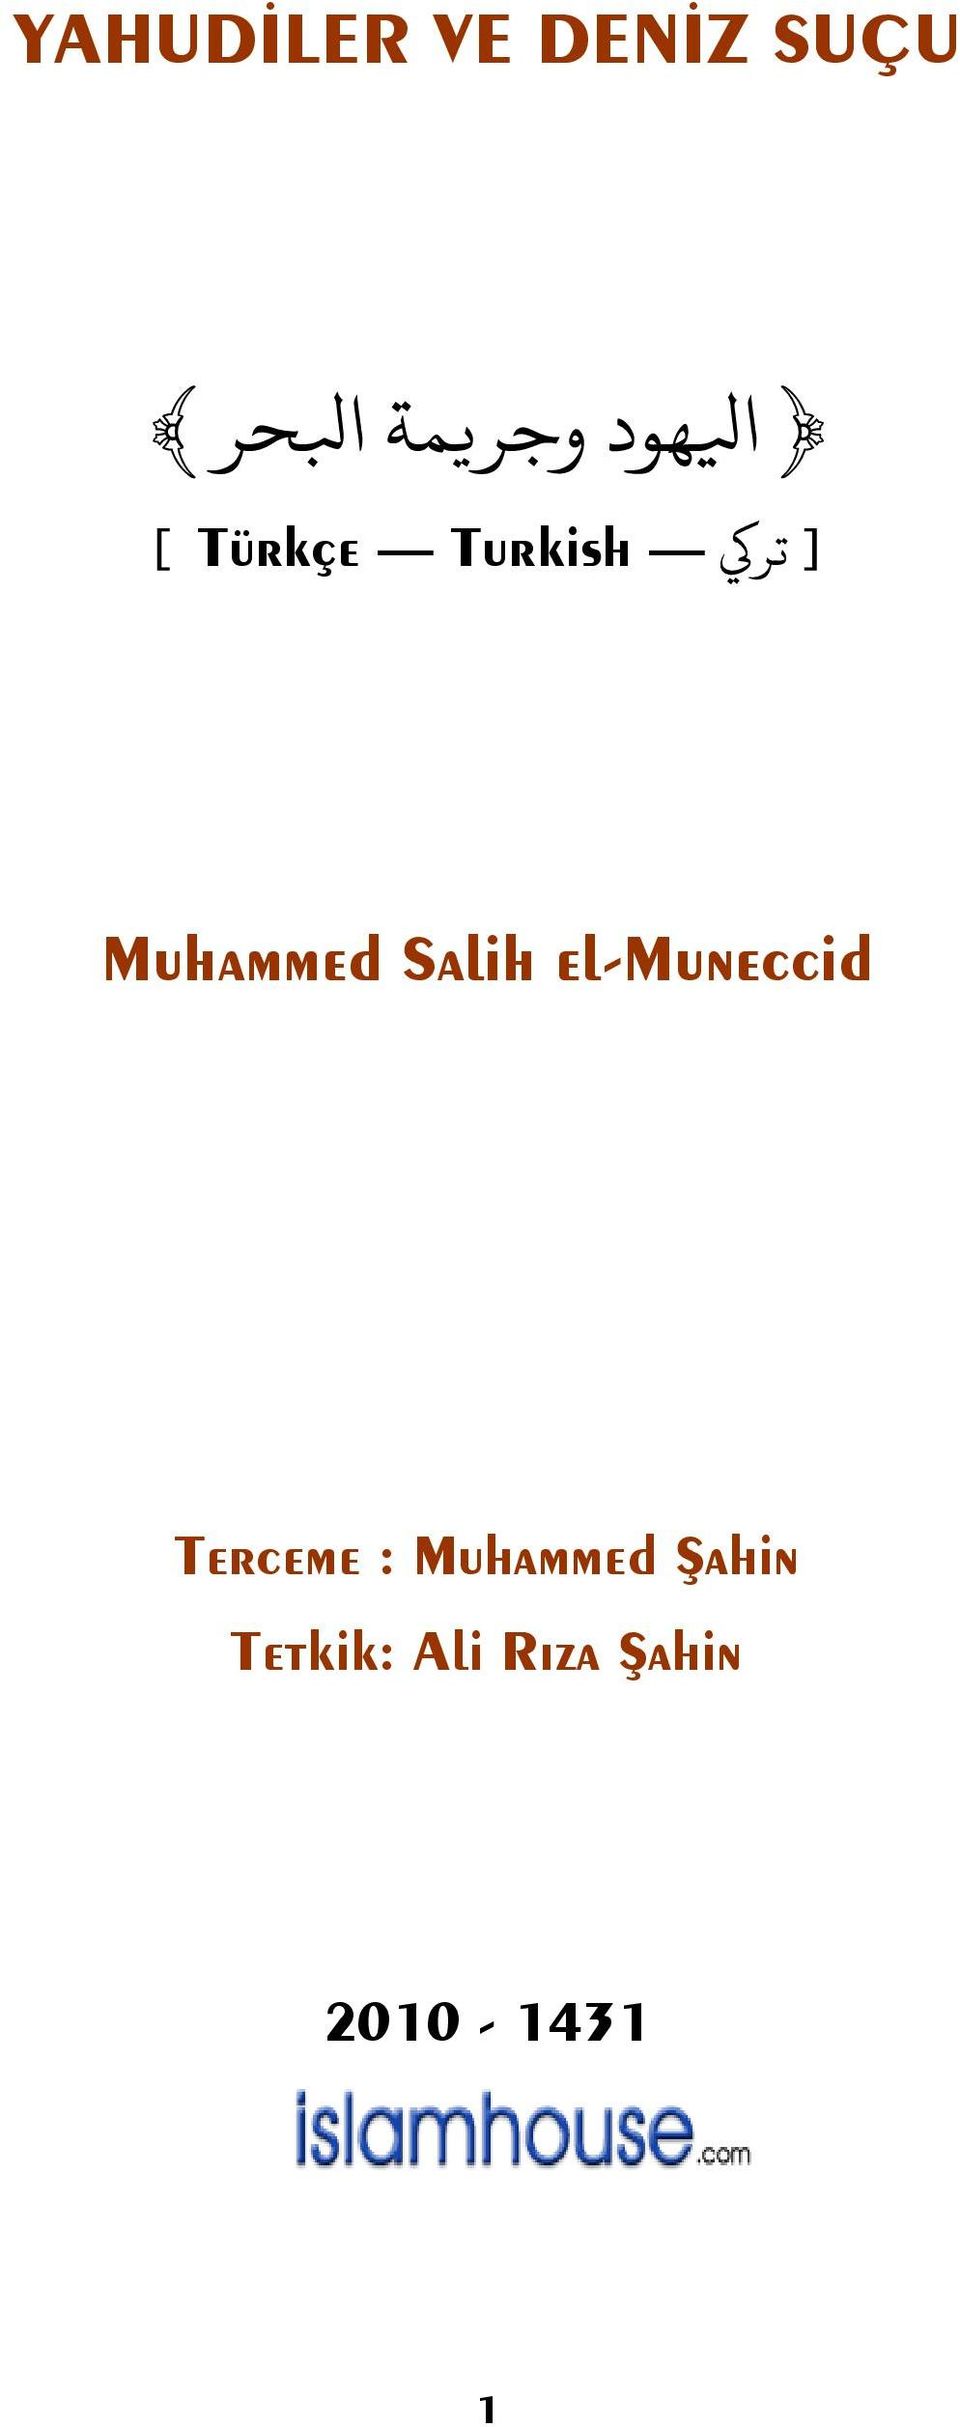 Salih el-muneccid Terceme : Muhammed